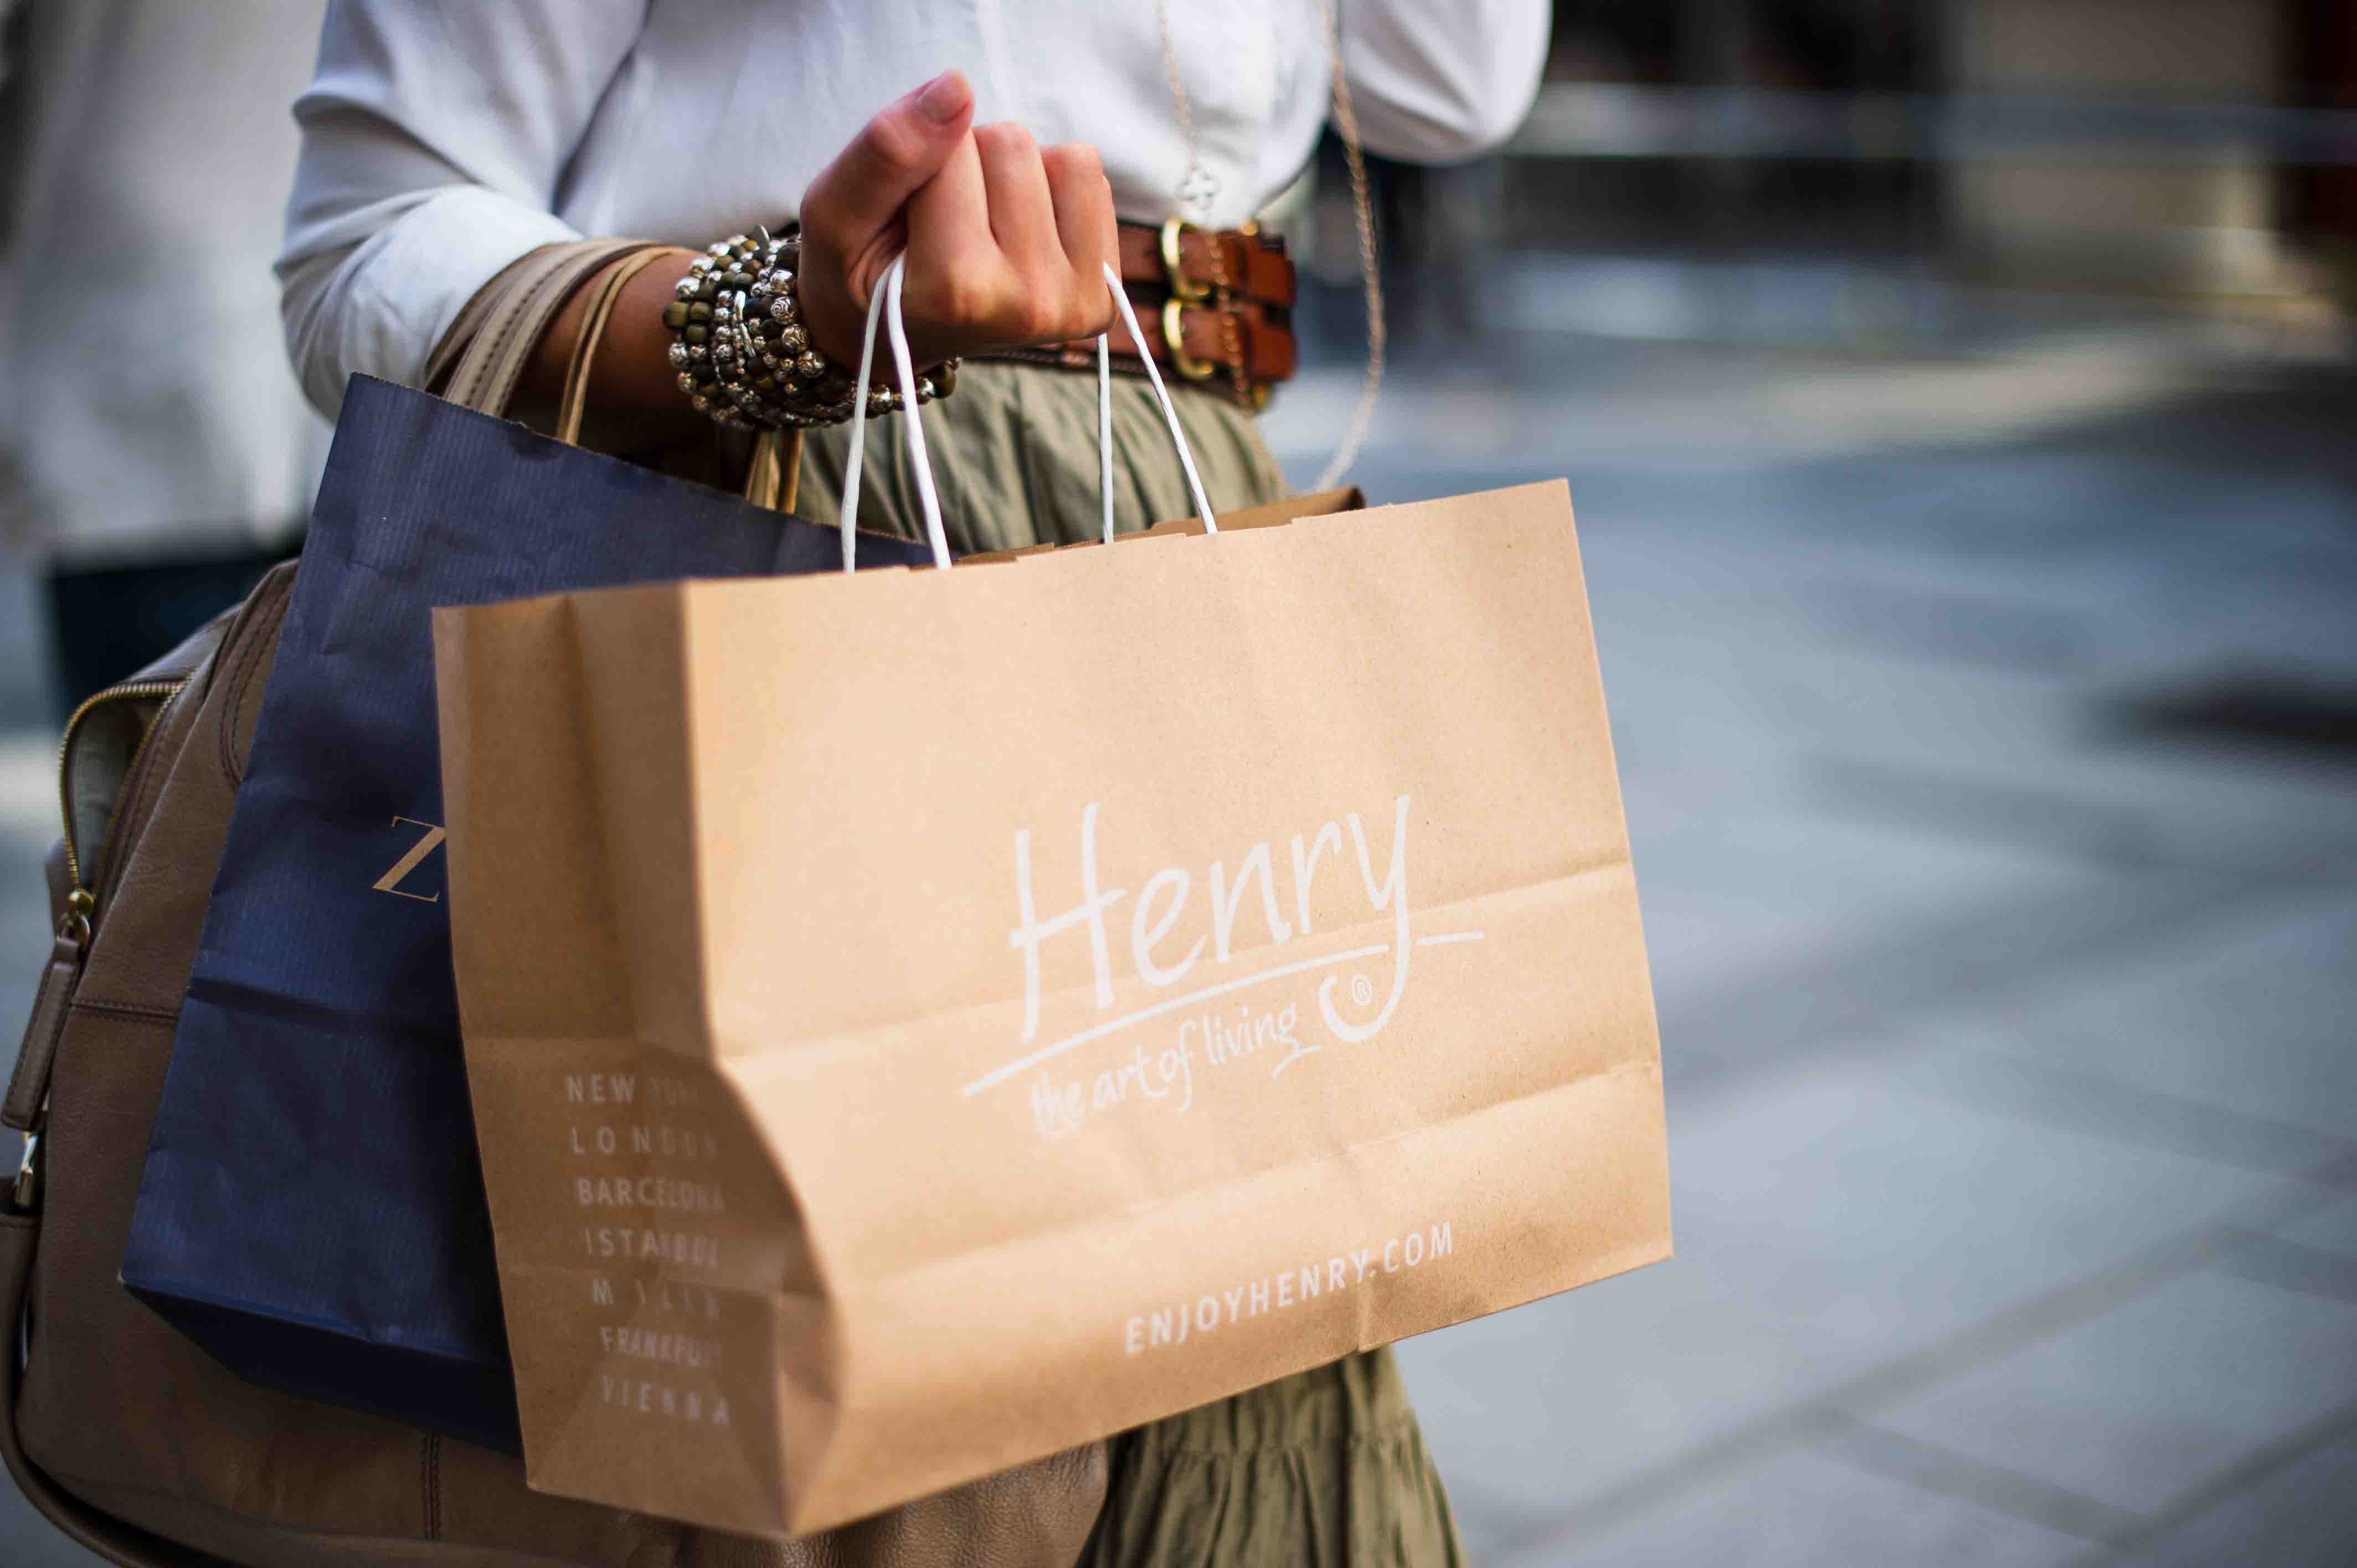 Sijpelen Meenemen Fictief Shoppen vrouwen meer online dan mannen? - Feedback Community